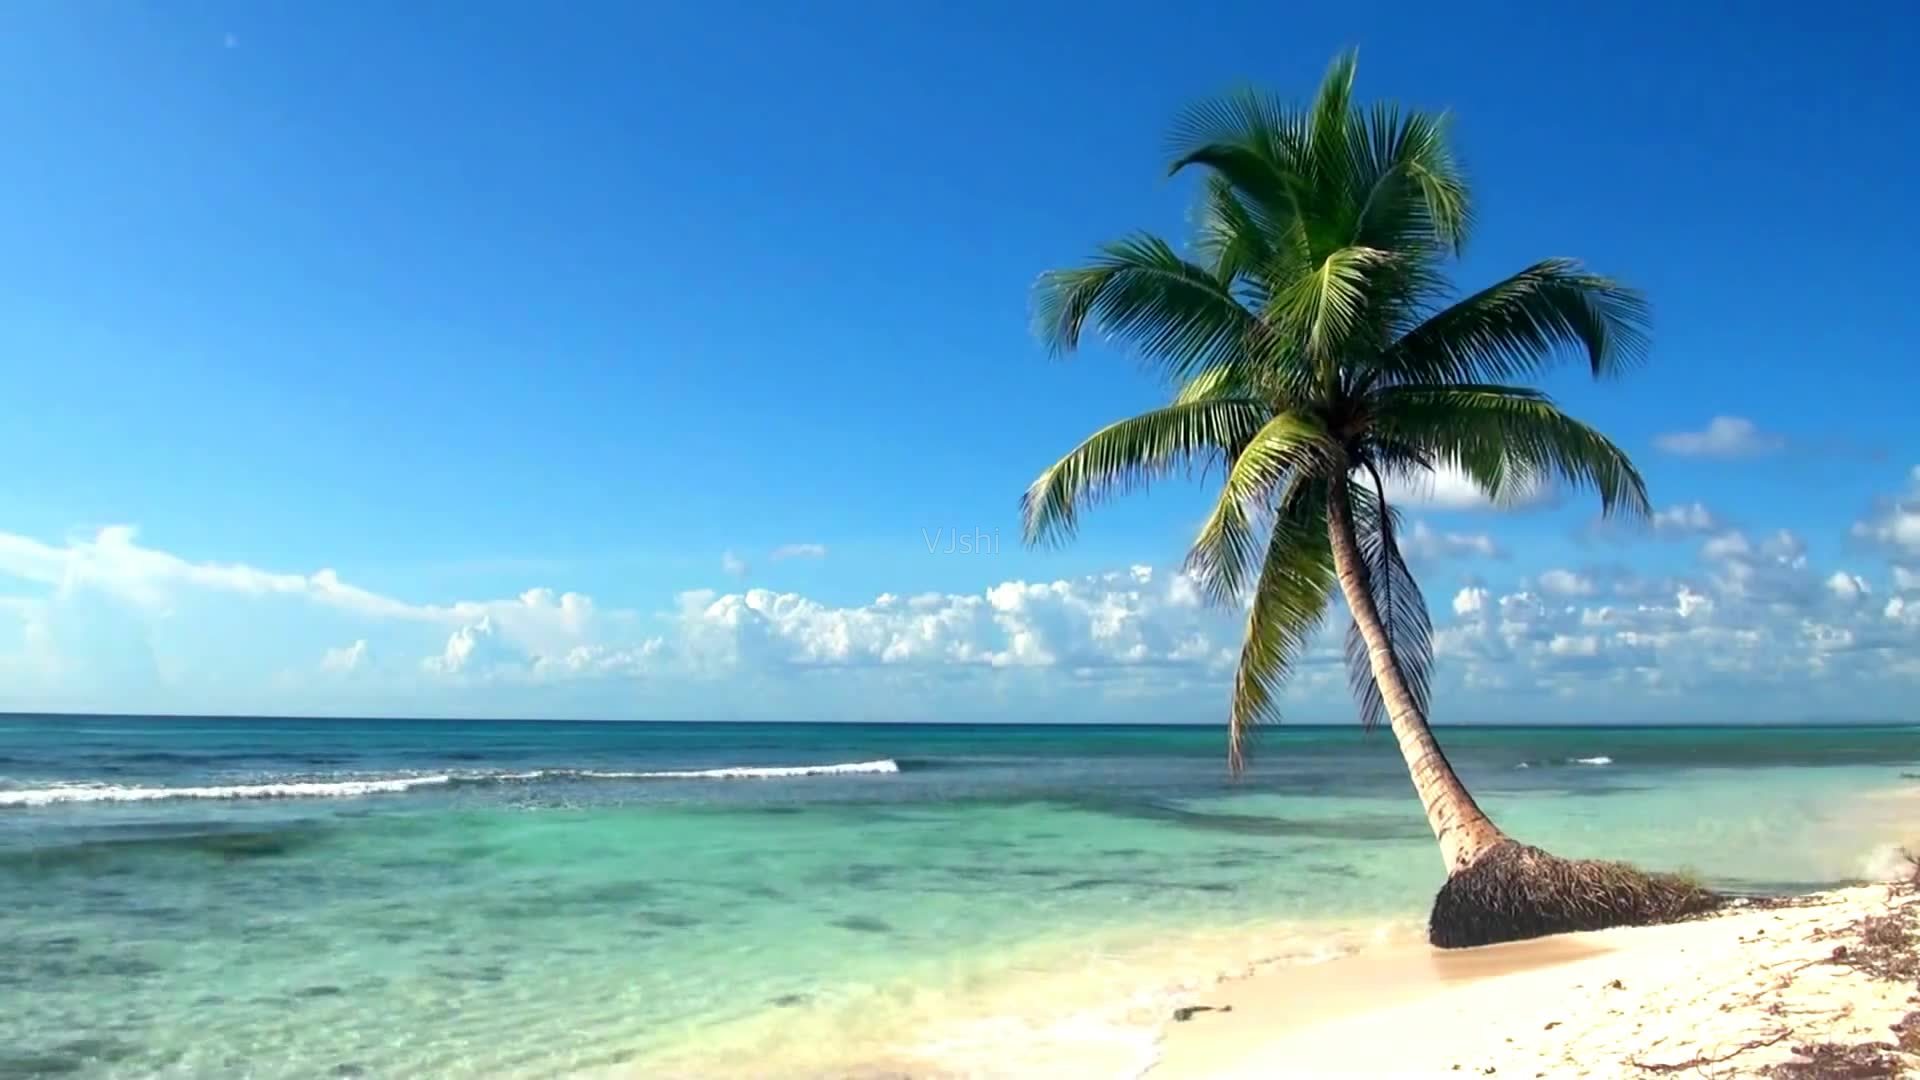 夏天的图片大全  海边椰子树景色大全(2)